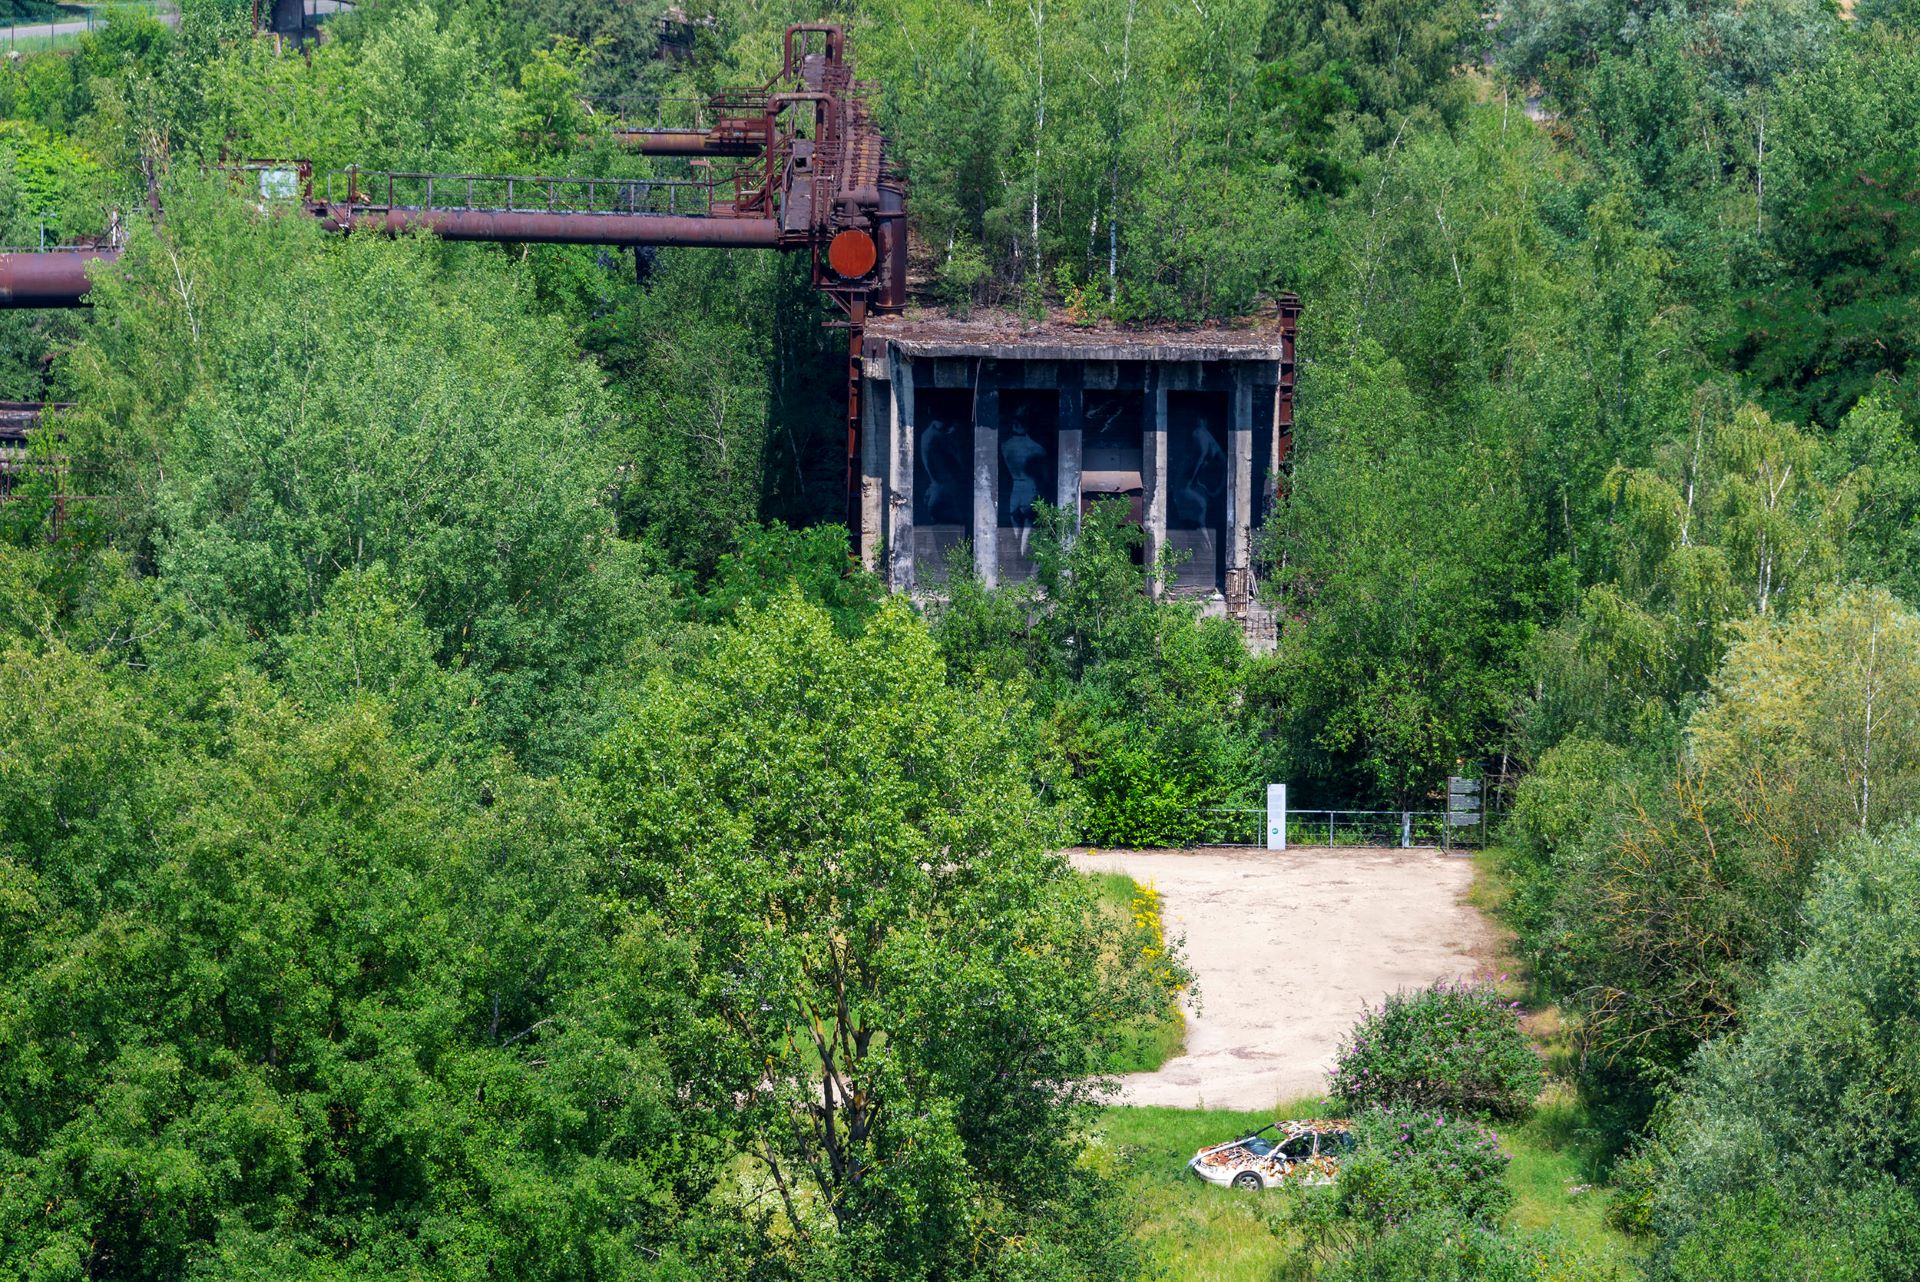 Des ruines industrielles sont visibles au milieu de Grüne.